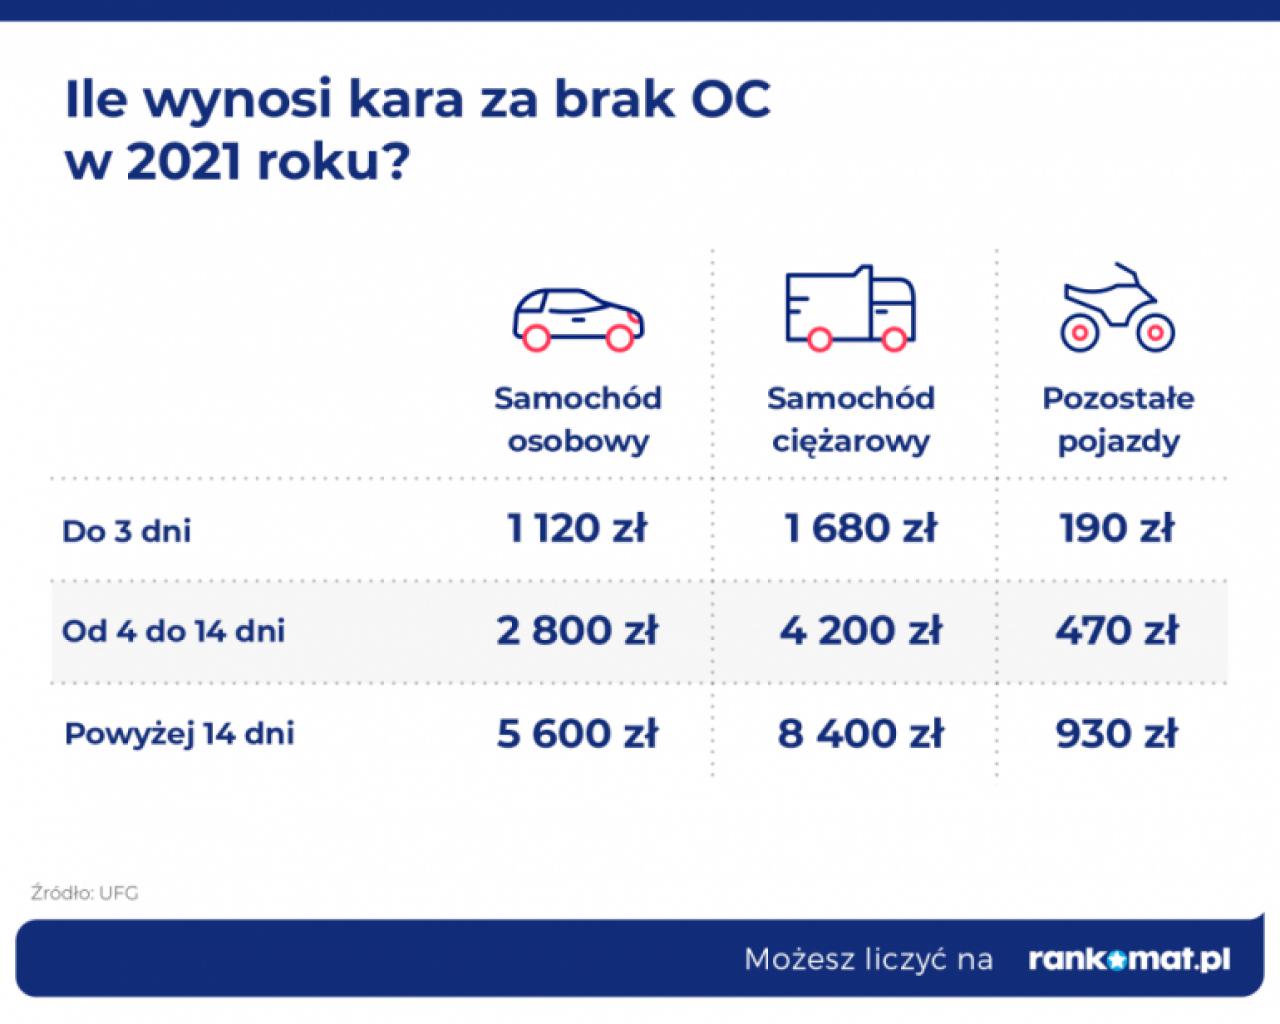 Polscy kierowcy spowodowali szkody na zagranicznych drogach o wartości 1,3 mld zł